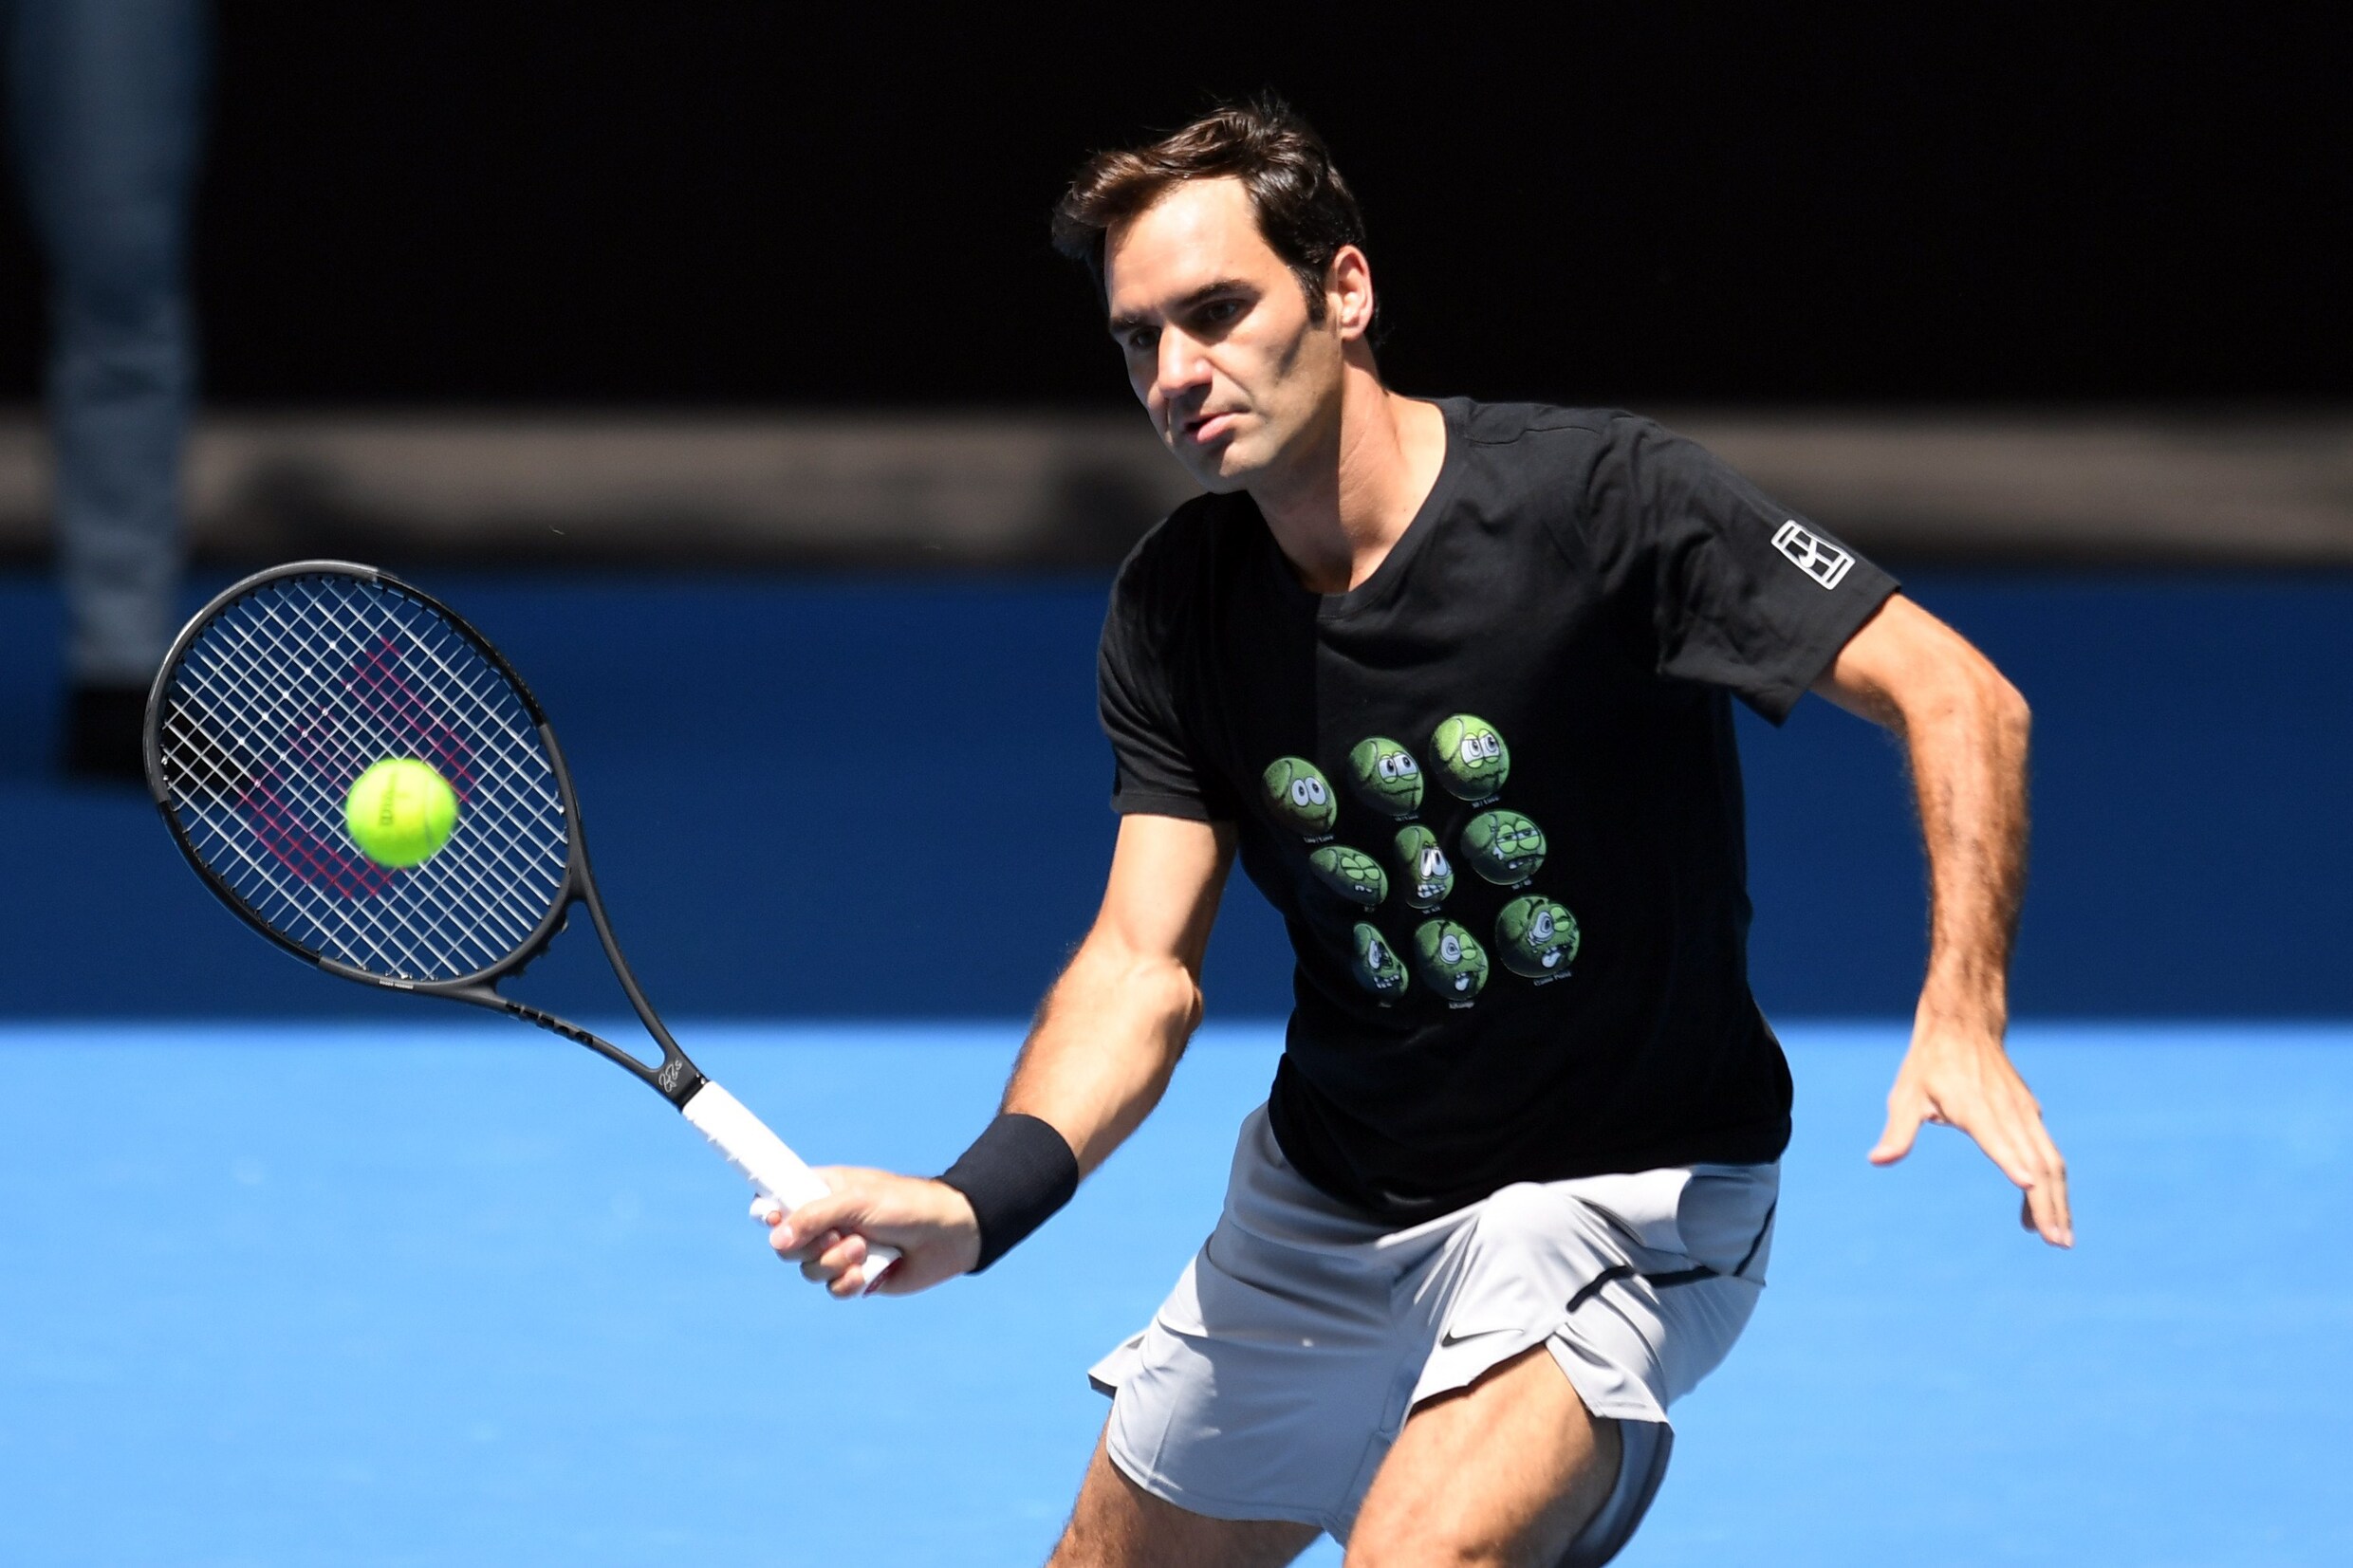 "Goffin wordt dit jaar moeilijk te verslaan", voorspelt Federer